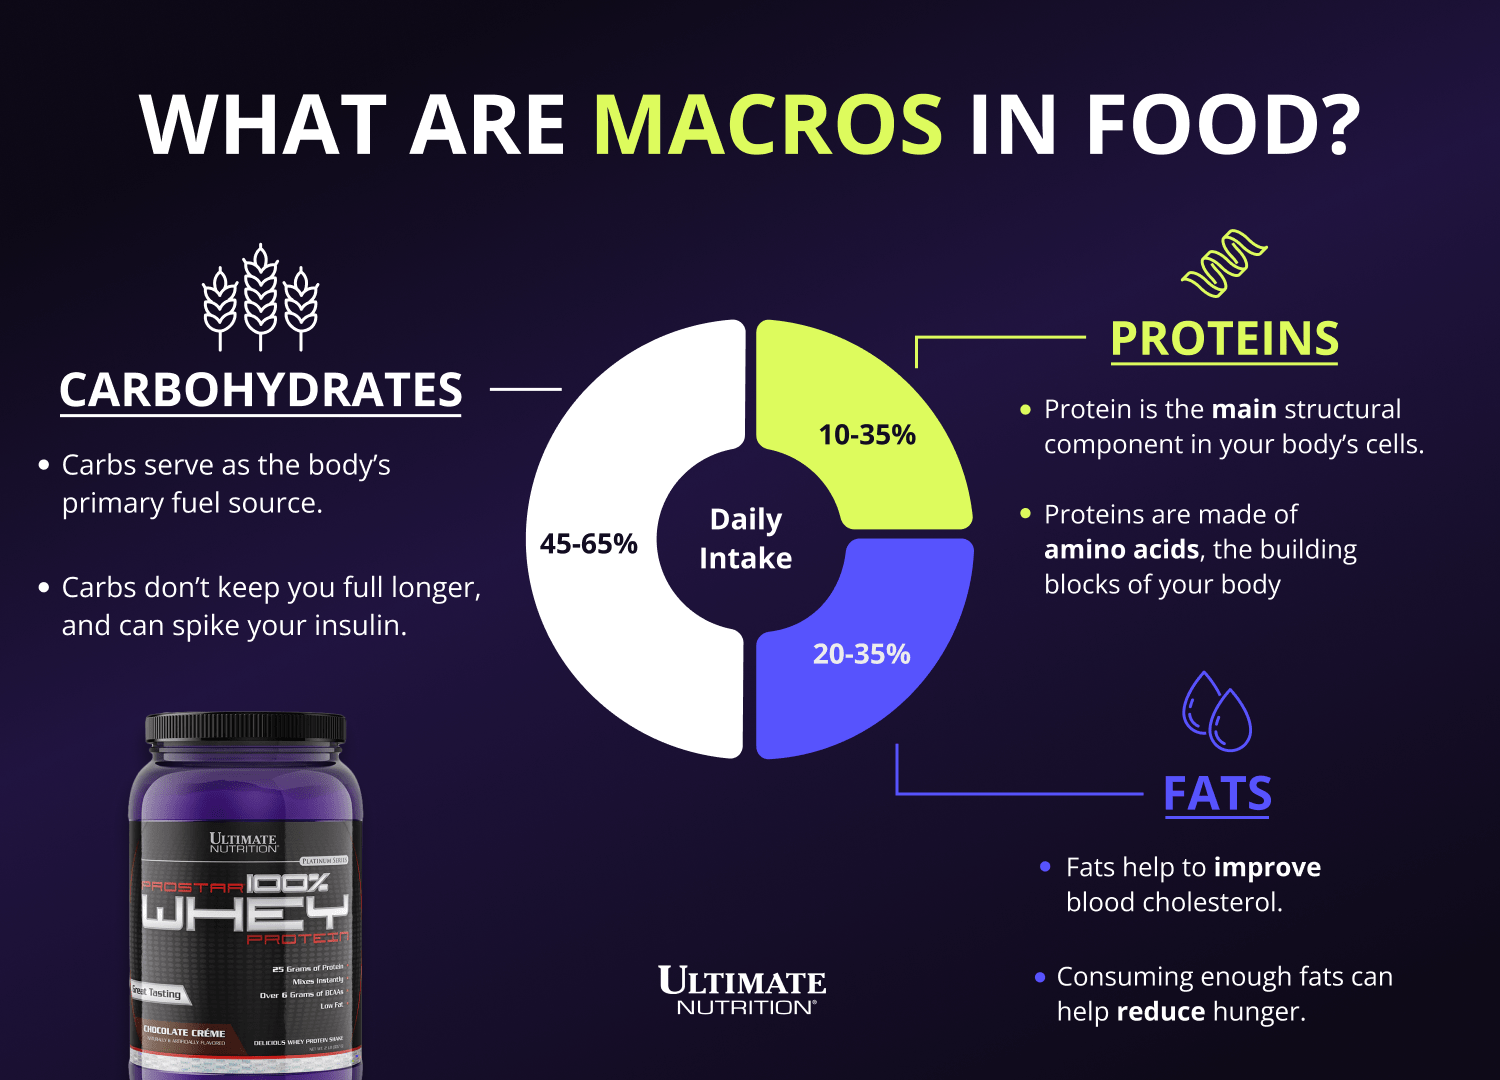 भोजन में मैक्रोज़ क्या हैं?